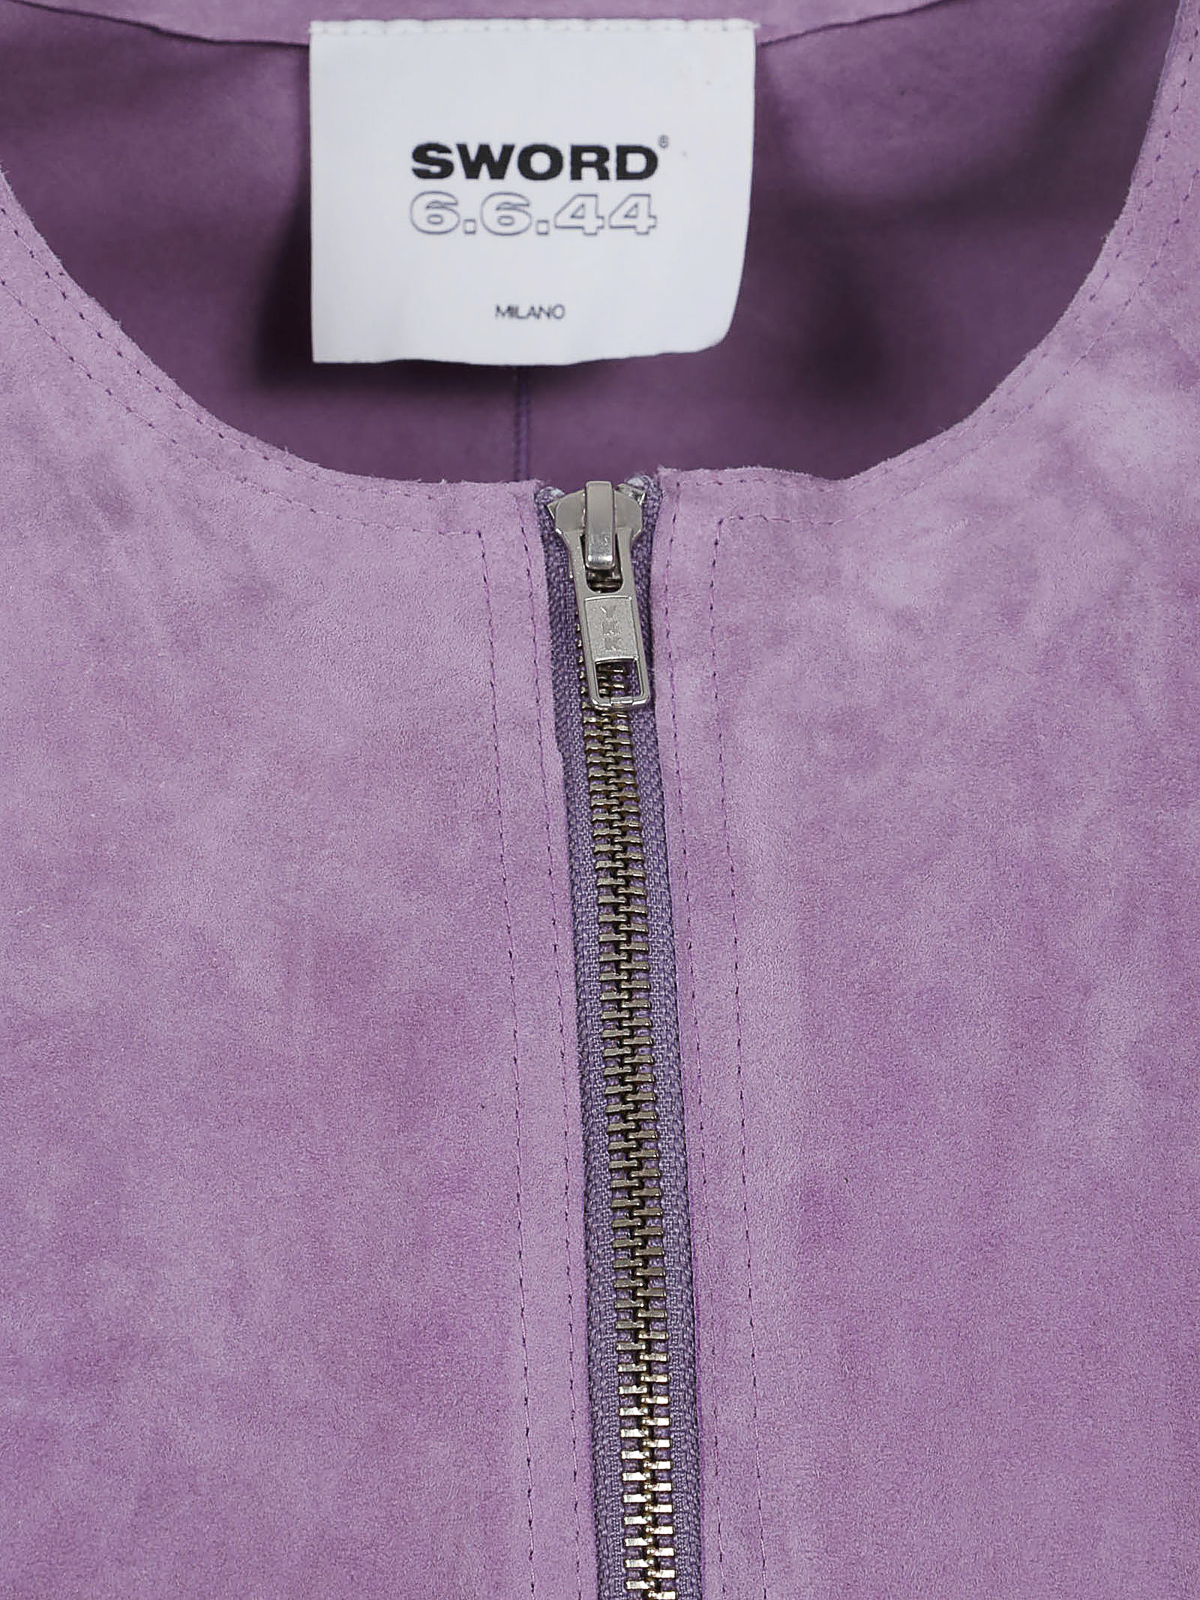 Shop Sword 6.6.44 Zip Suede Jacket In Light Purple